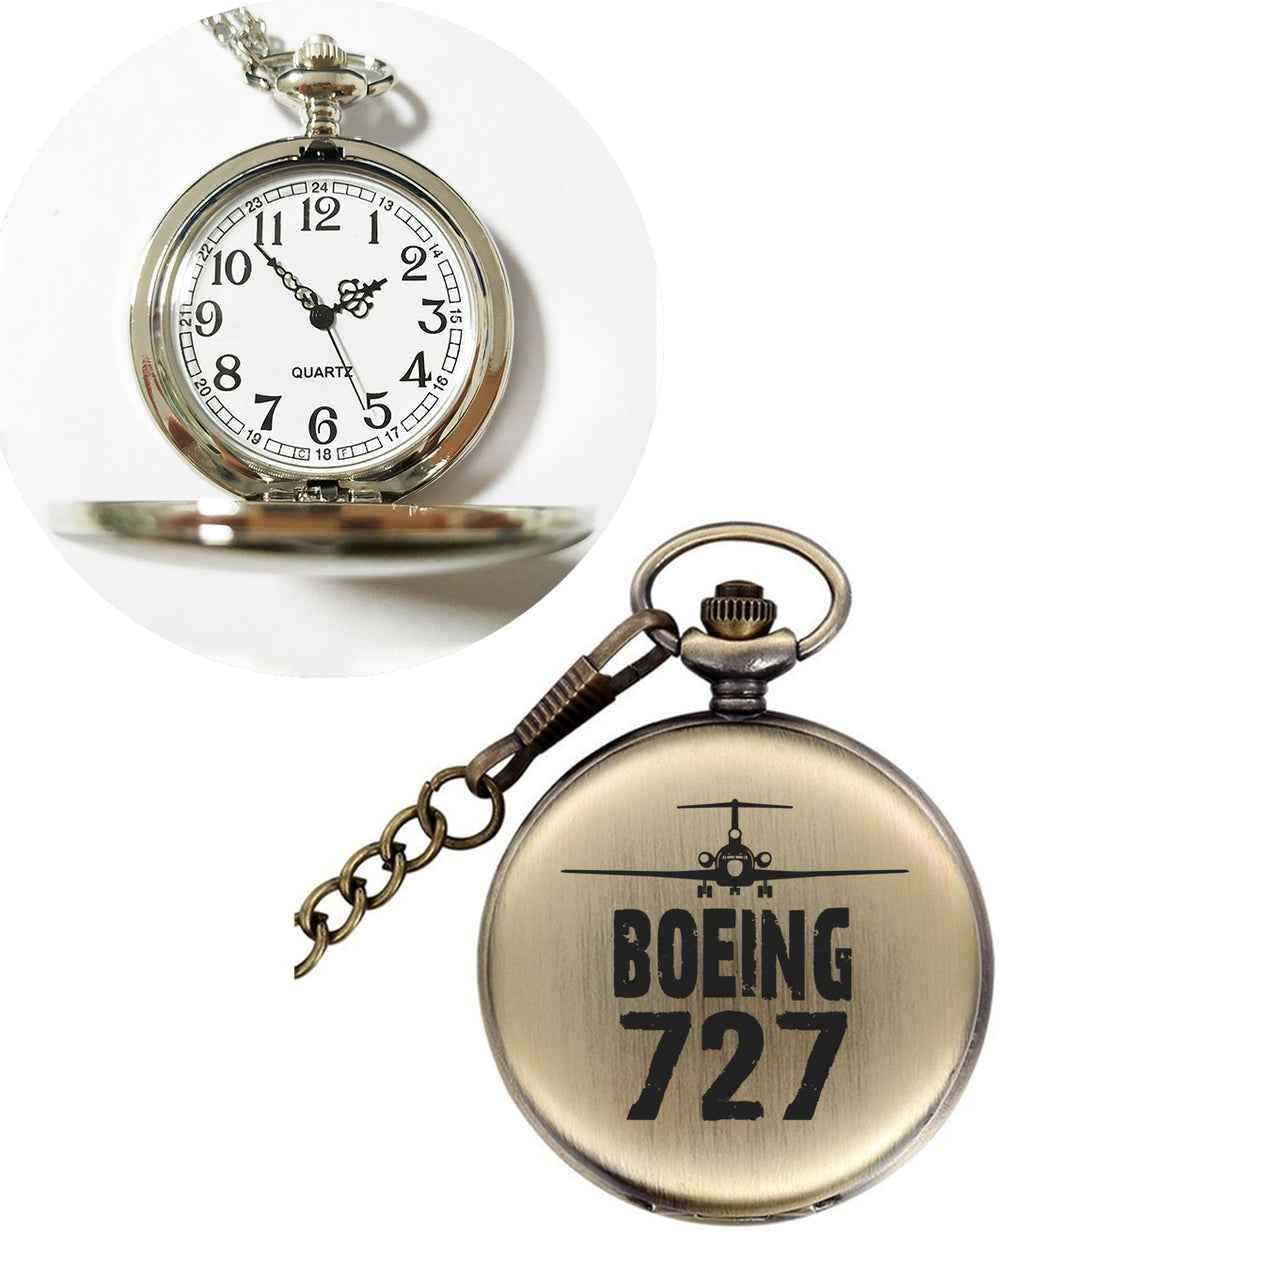 Boeing 727 & Plane Designed Pocket Watches